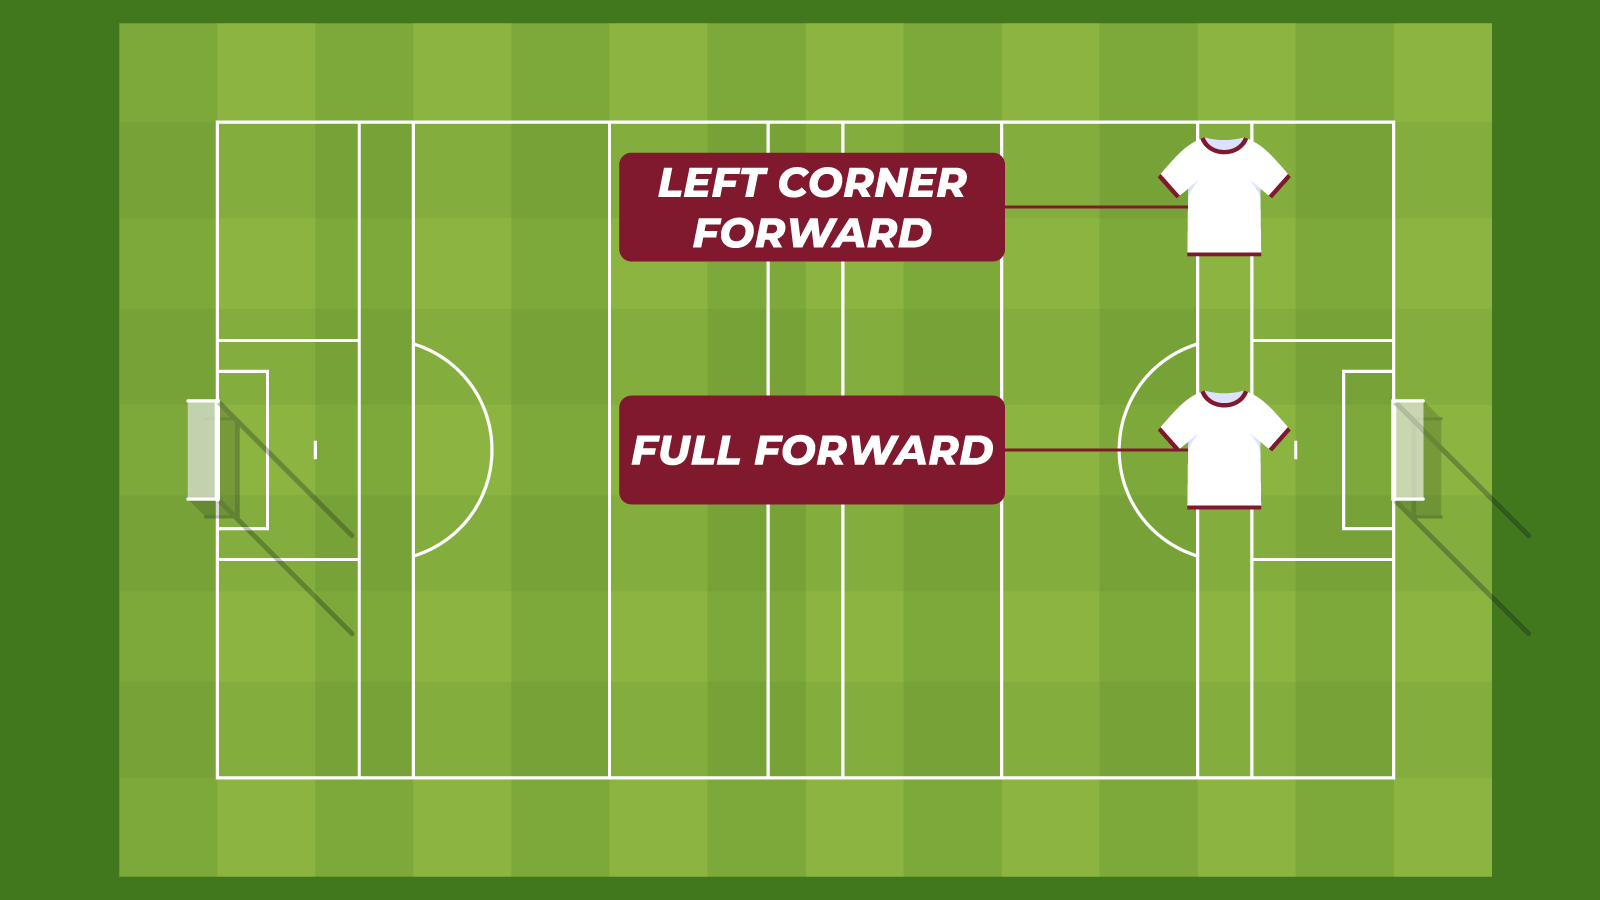 Full Forward and Left Corner Forward